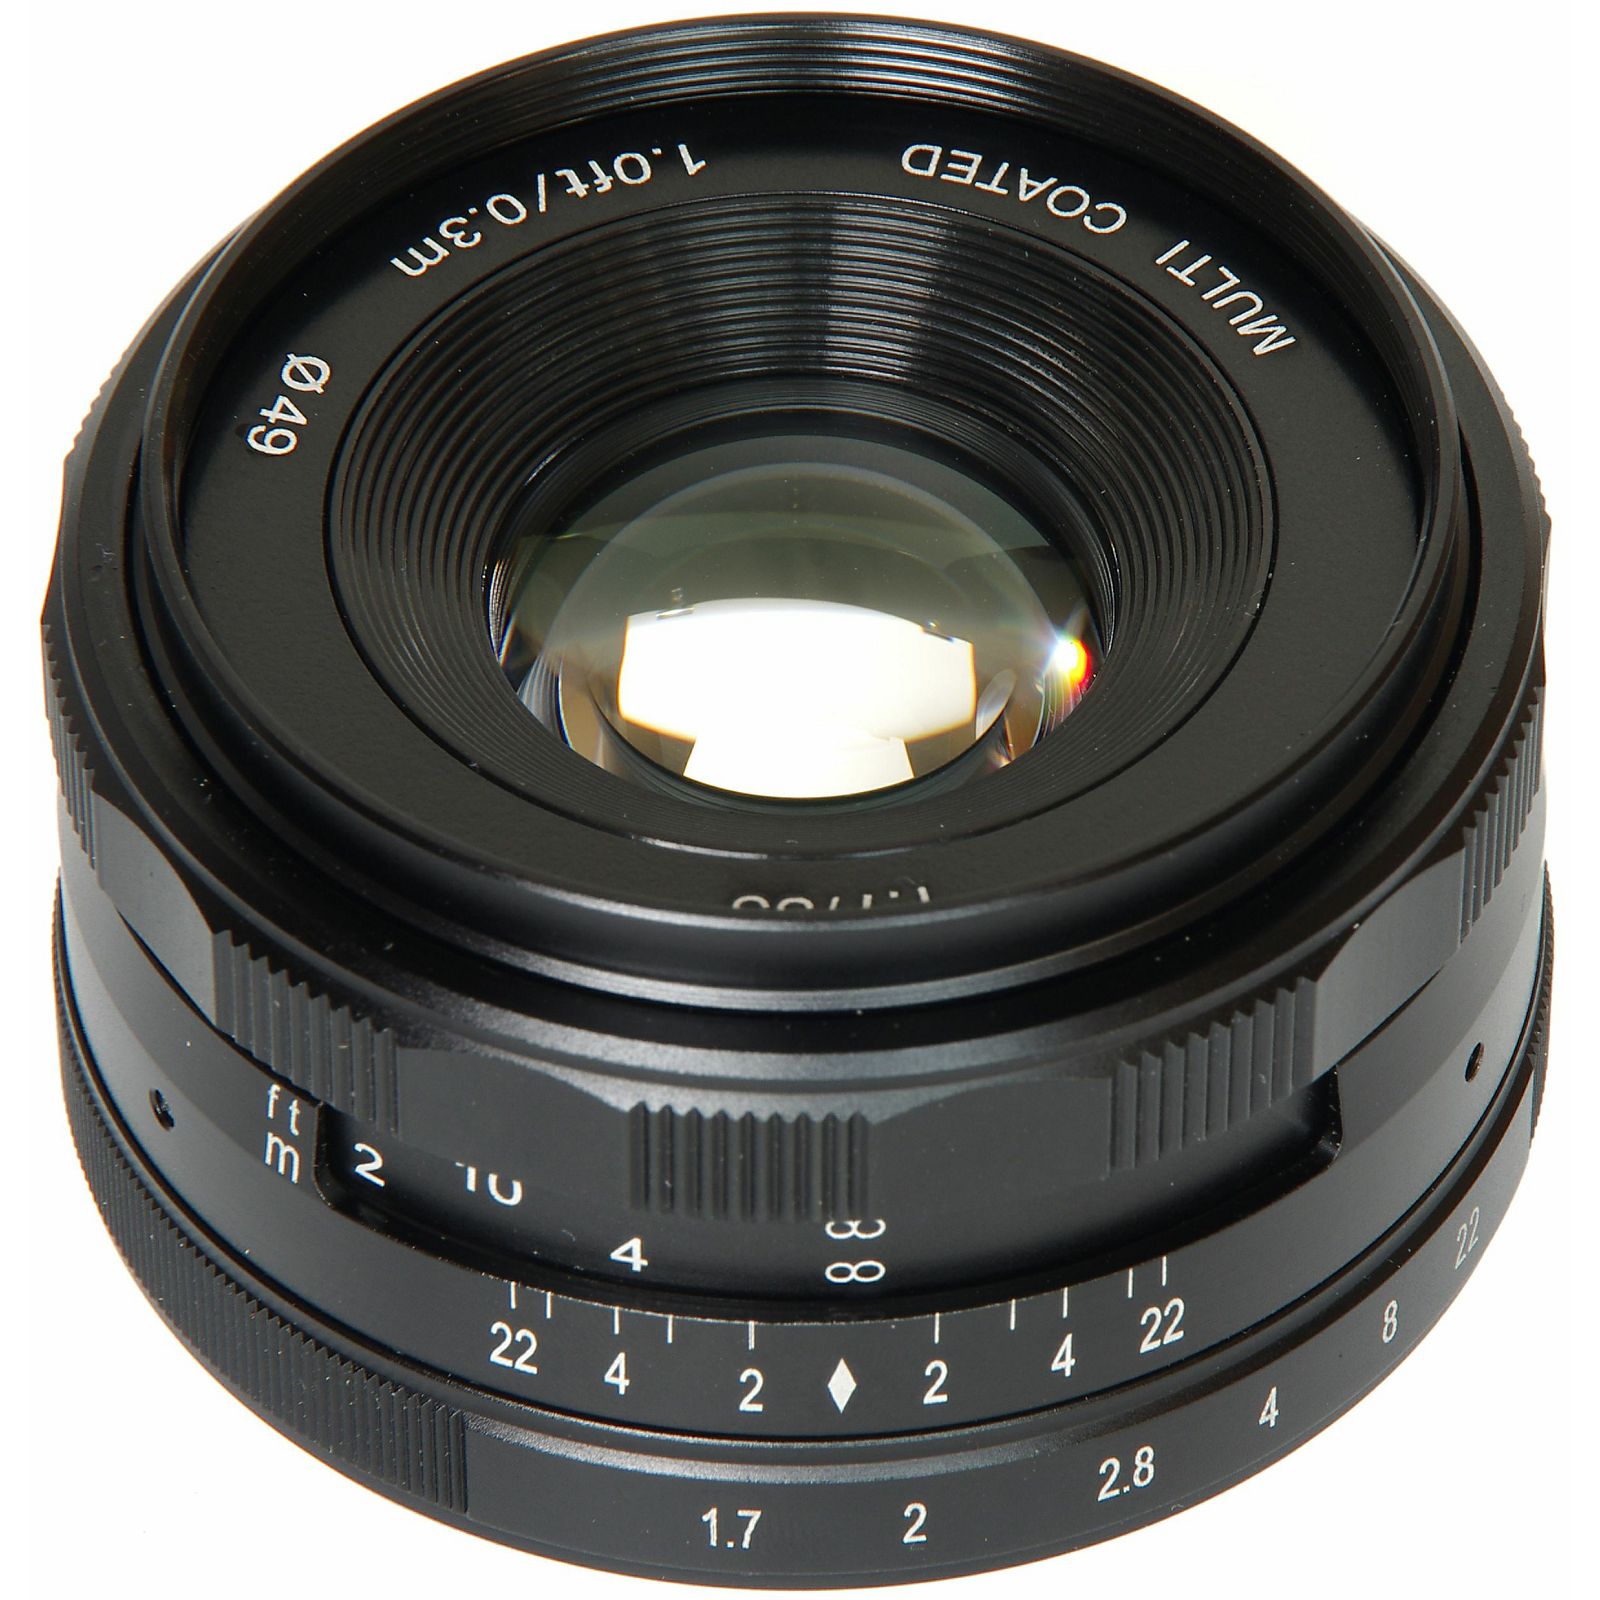 Voking 35mm F1.7 širokokutni objektiv za Panasonic/Olympus (VK35-1.7-MFT)